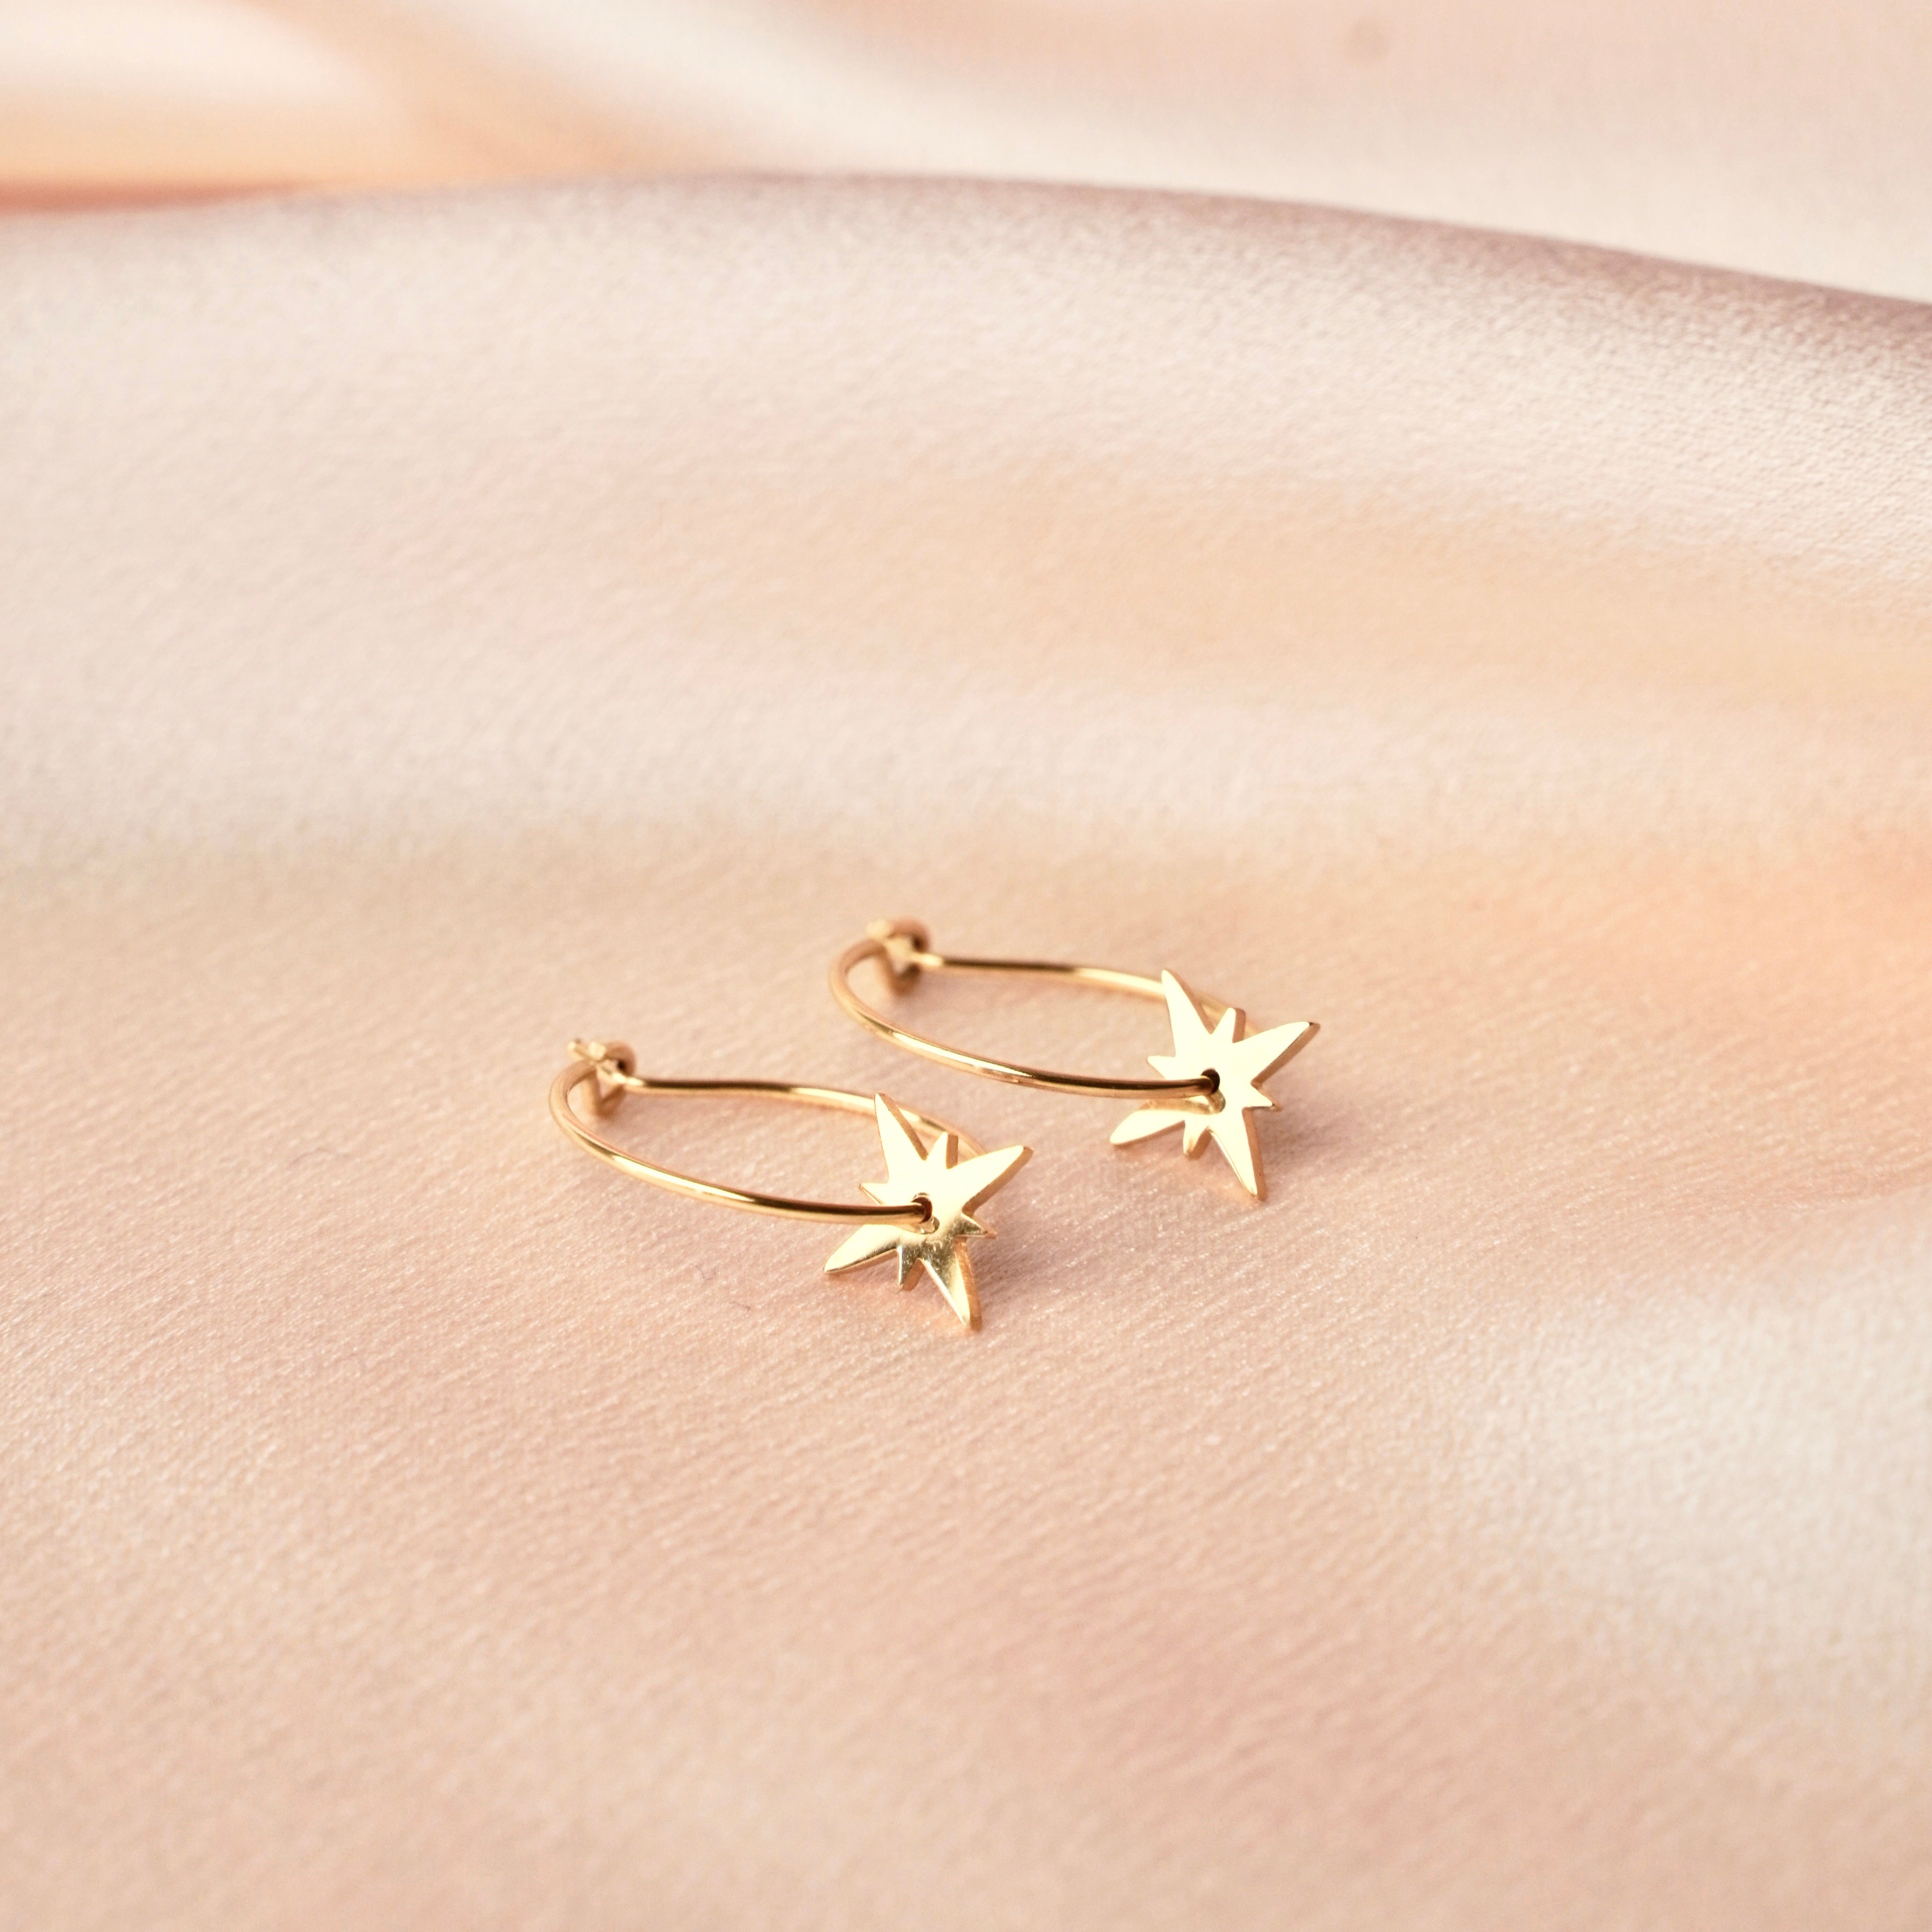 Starry sky hoop earrings